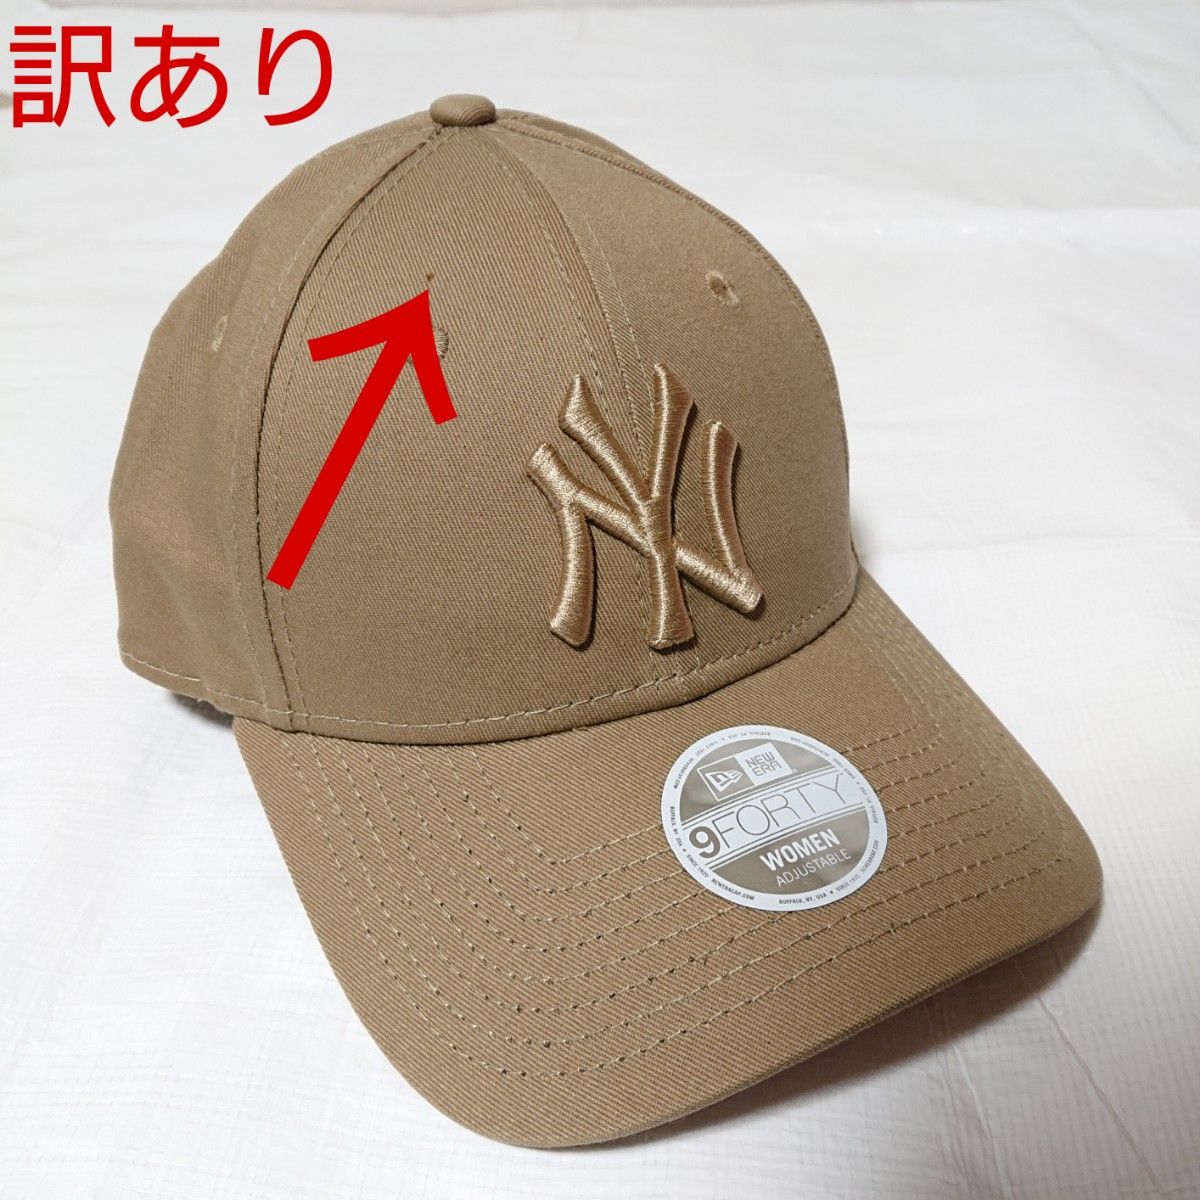 【訳あり】NEW ERA ニューエラ レディース 9FORTY キャップ 帽子 NY ヤンキース コーヒー ブラウン 茶色 B